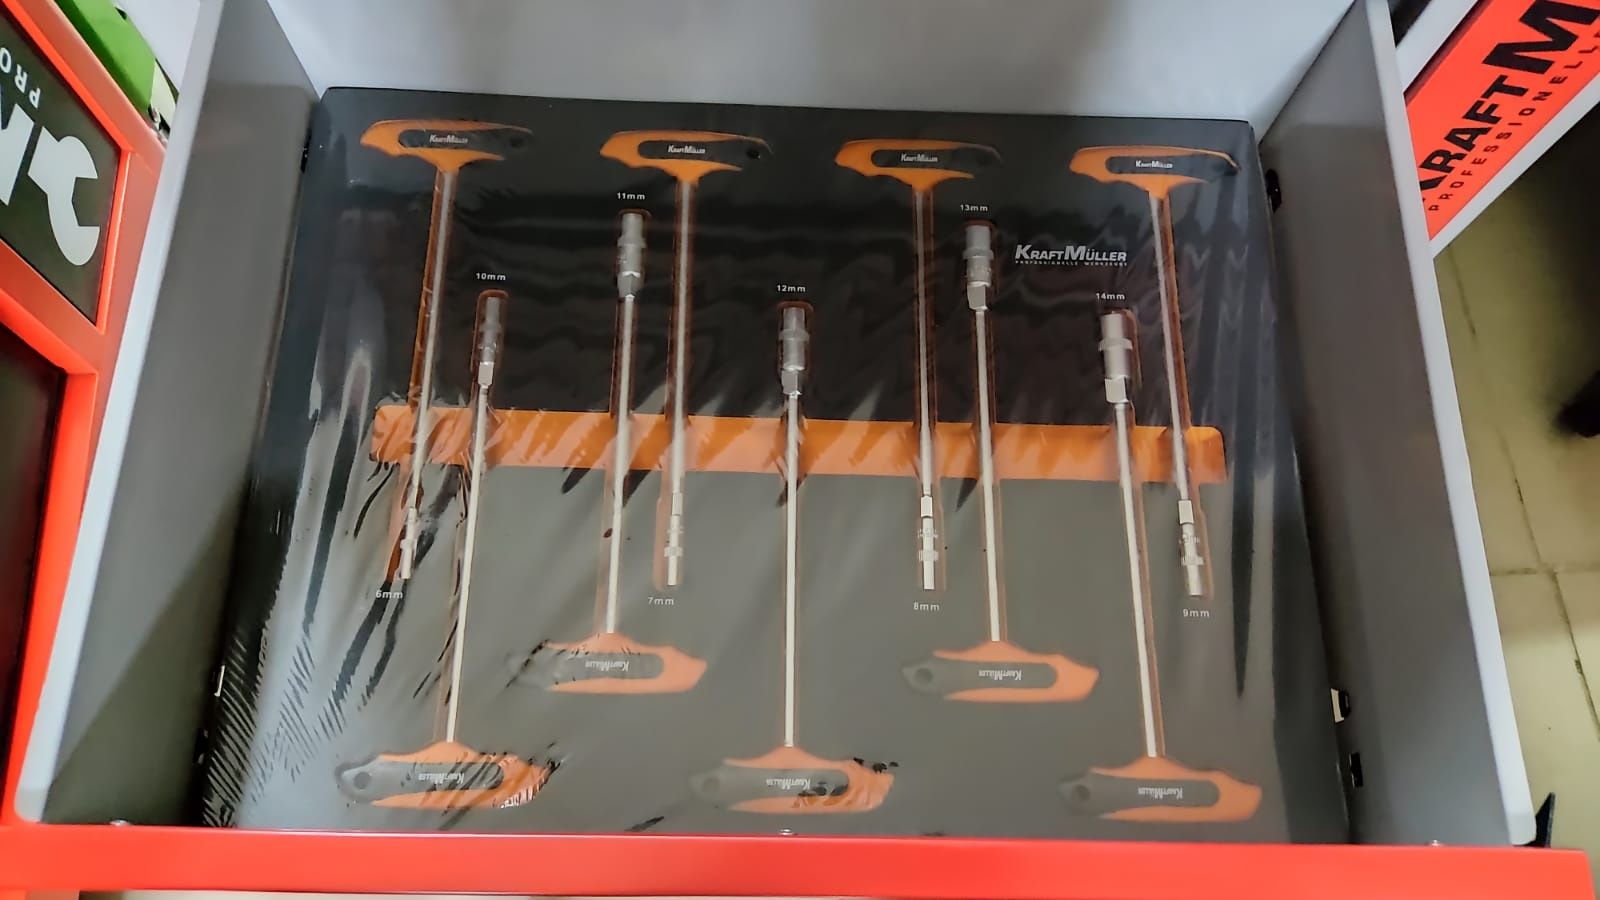 Carrinho de ferramentas com 7 gavetas cheias XXL- Kraft Müller

NOVO 2